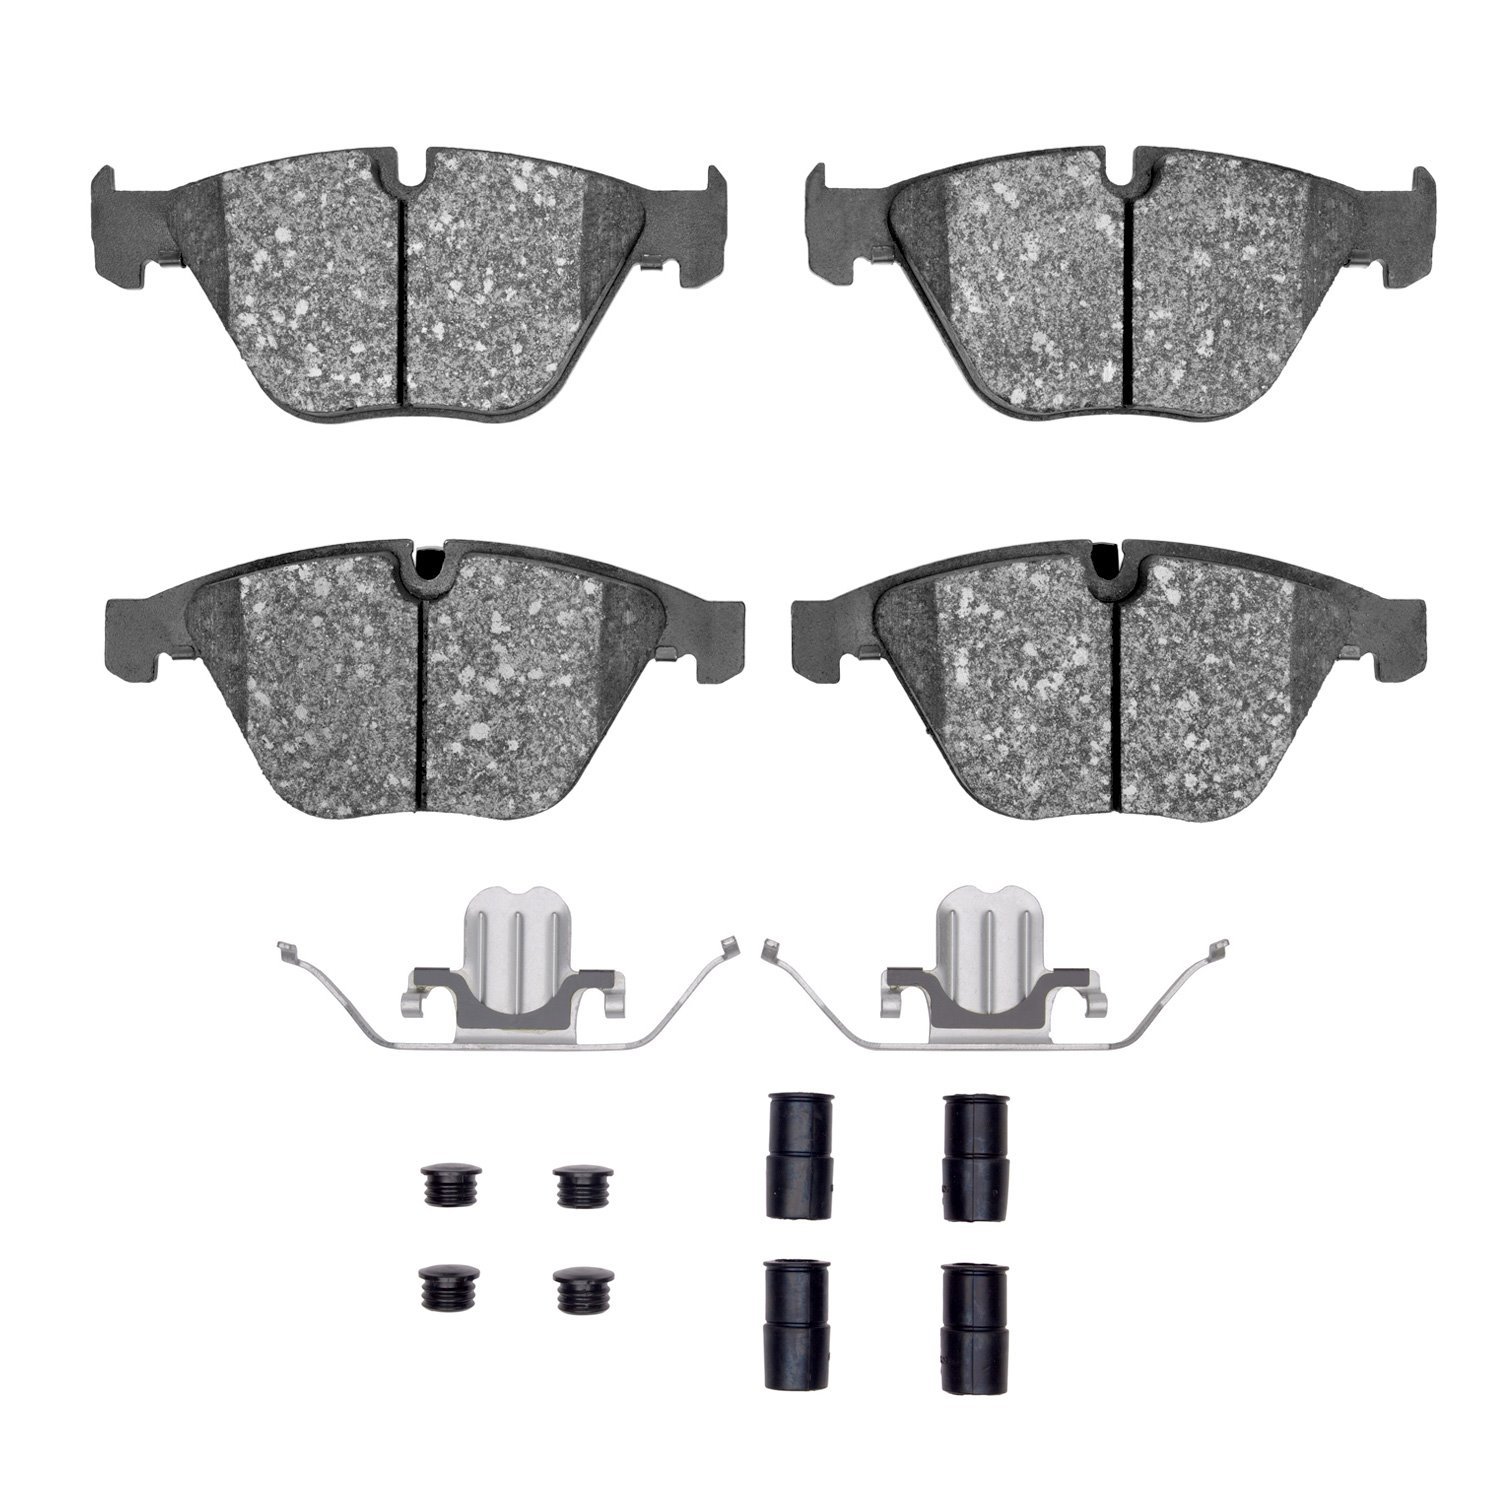 Euro Ceramic Brake Pads & Hardware Kit, 2007-2015 BMW, Position: Front